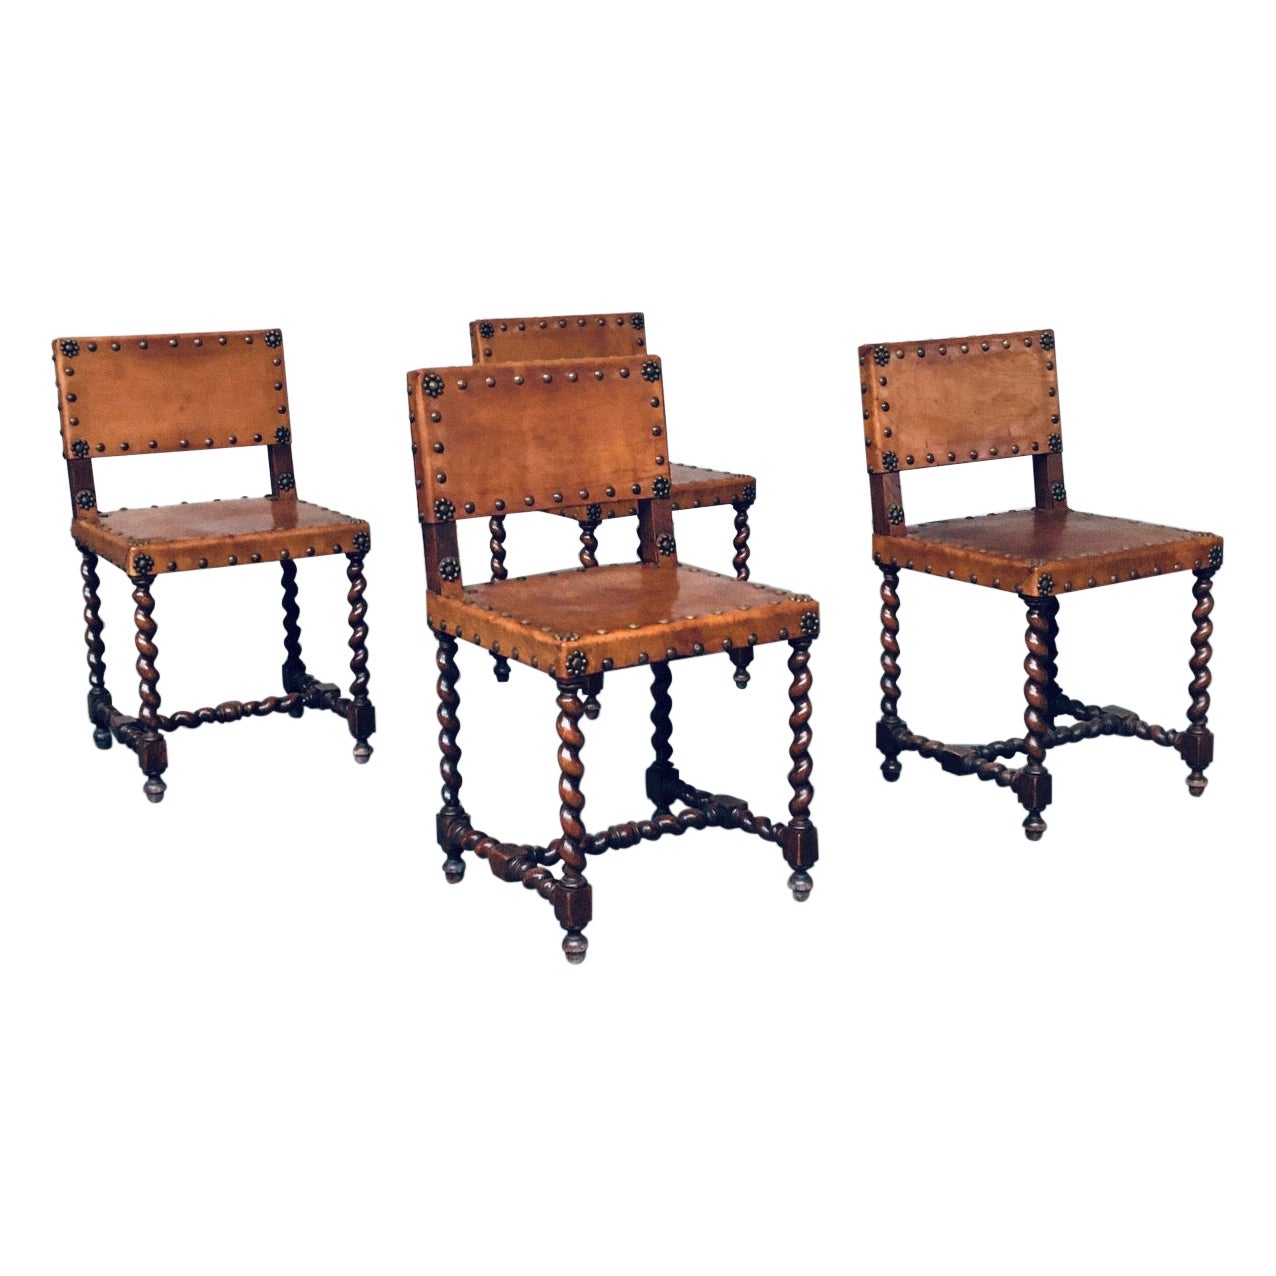 Englische Beistellstühle aus braunem Leder und Eiche im Cromwellian-Stil, frühe 1900er Jahre